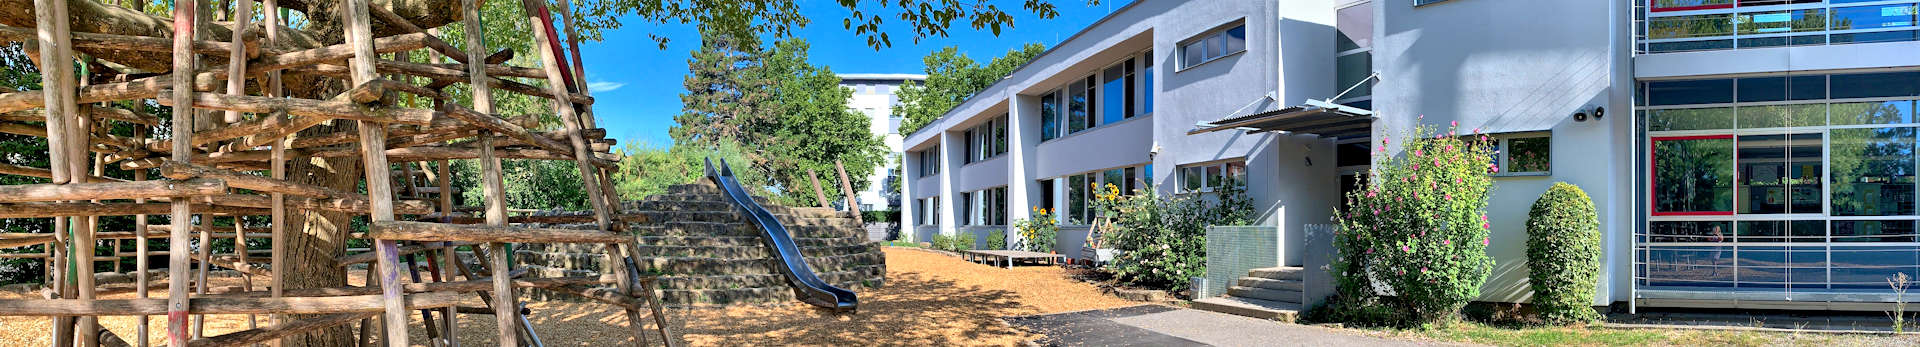 Wartbergschule - unsere Schule